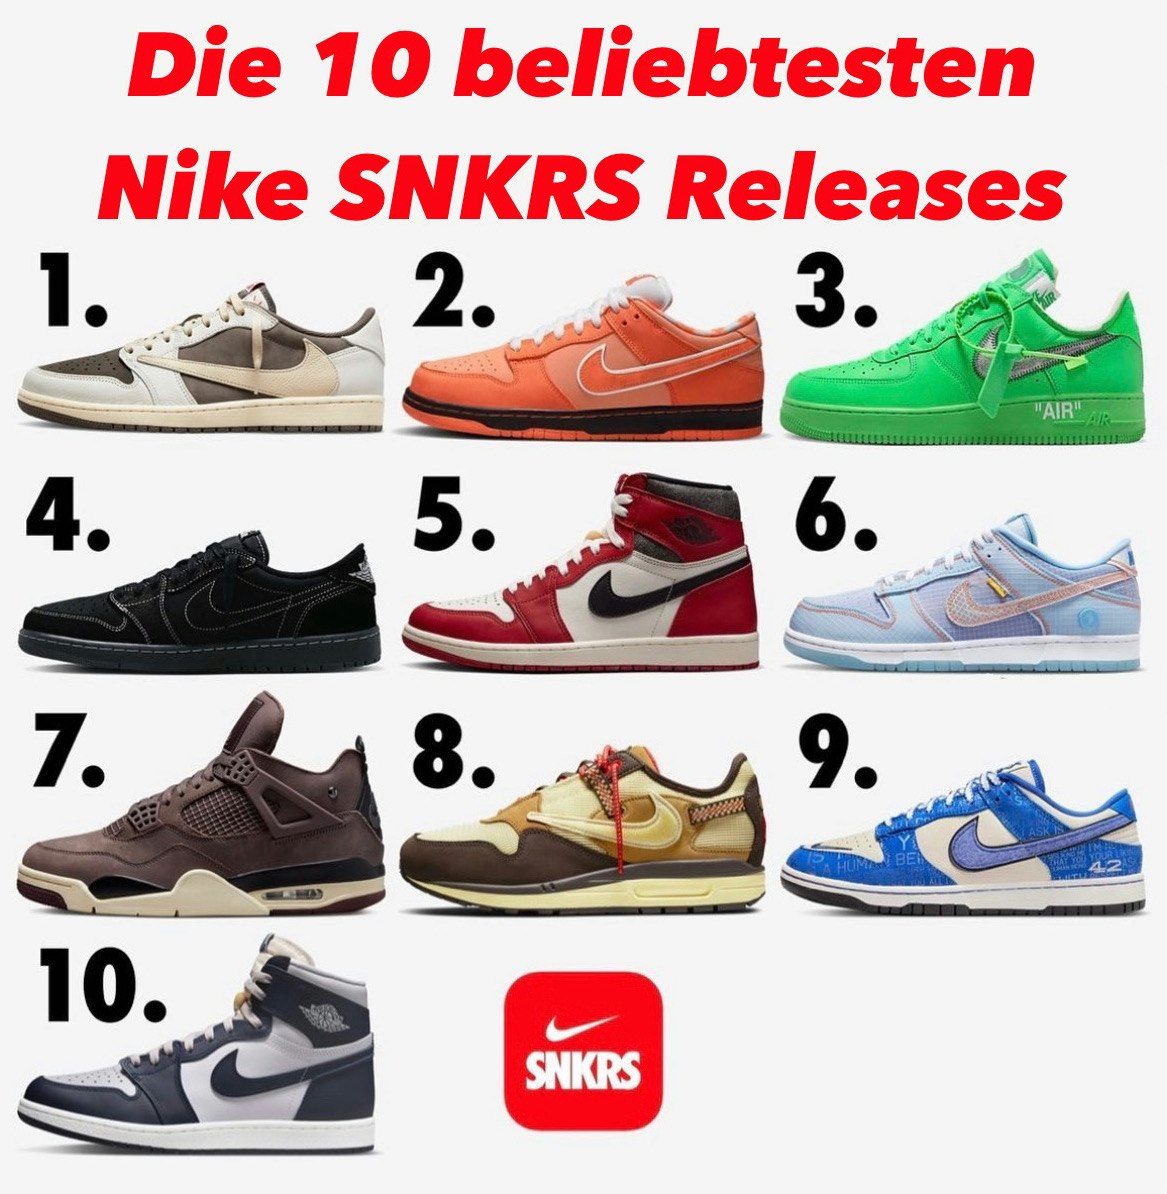 Die 10 beliebtesten Nike SNKRS Releases!